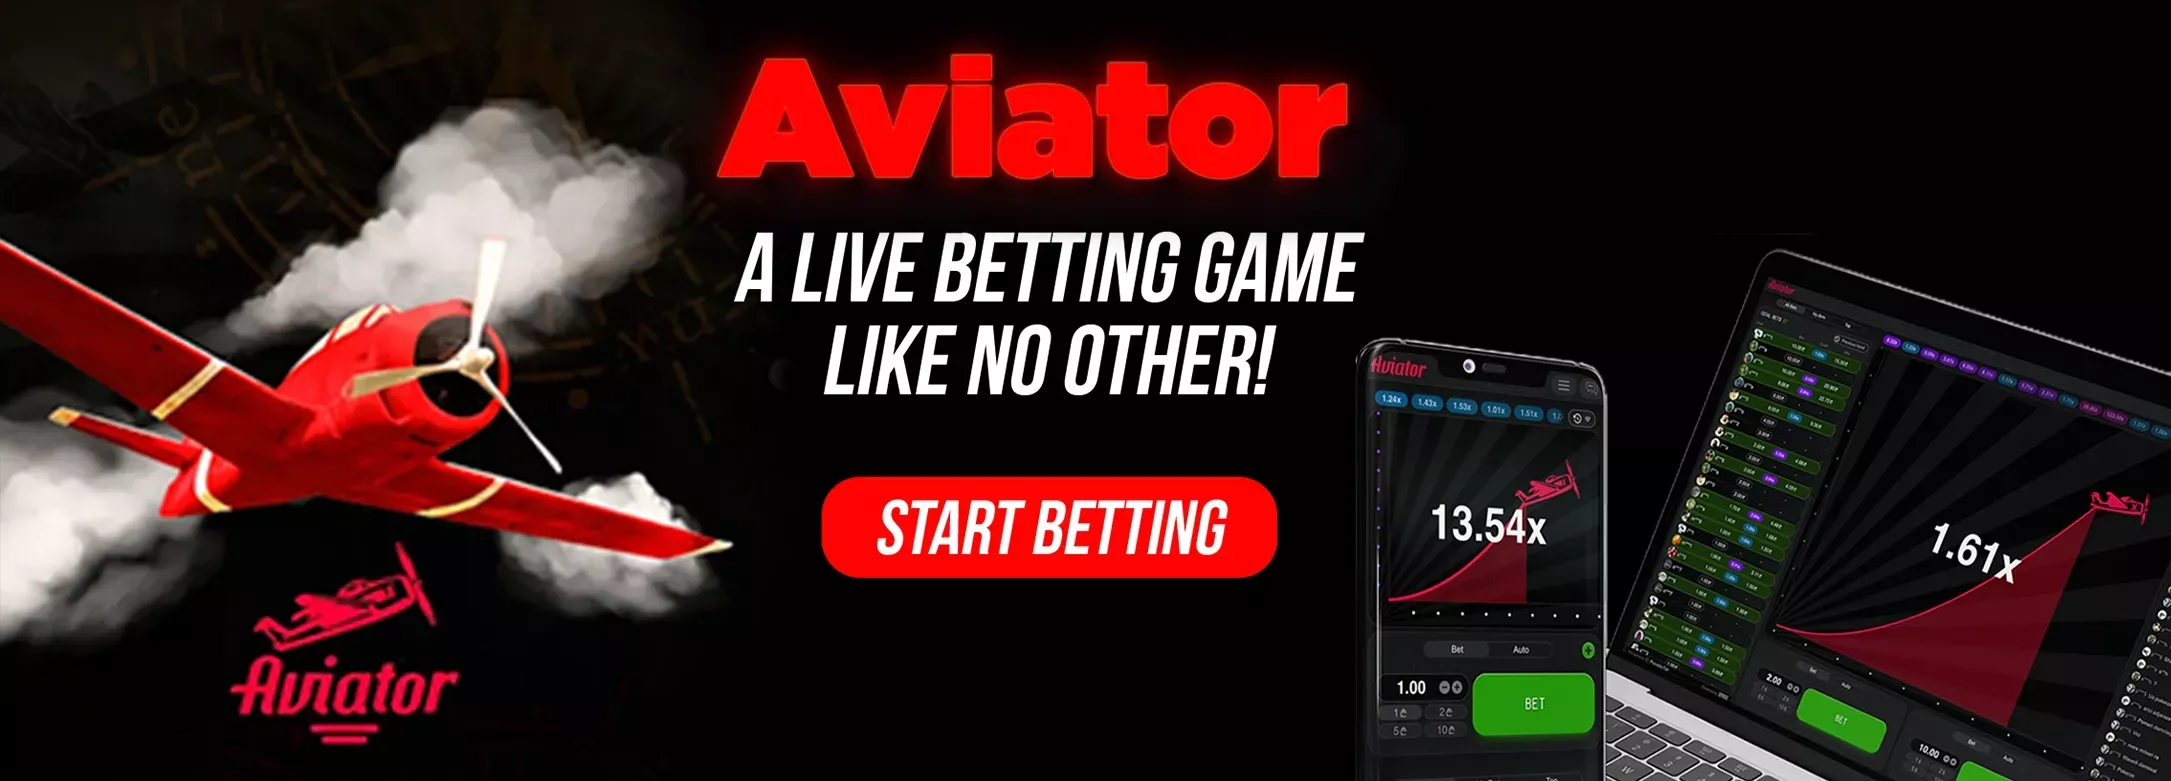 aviator live betting